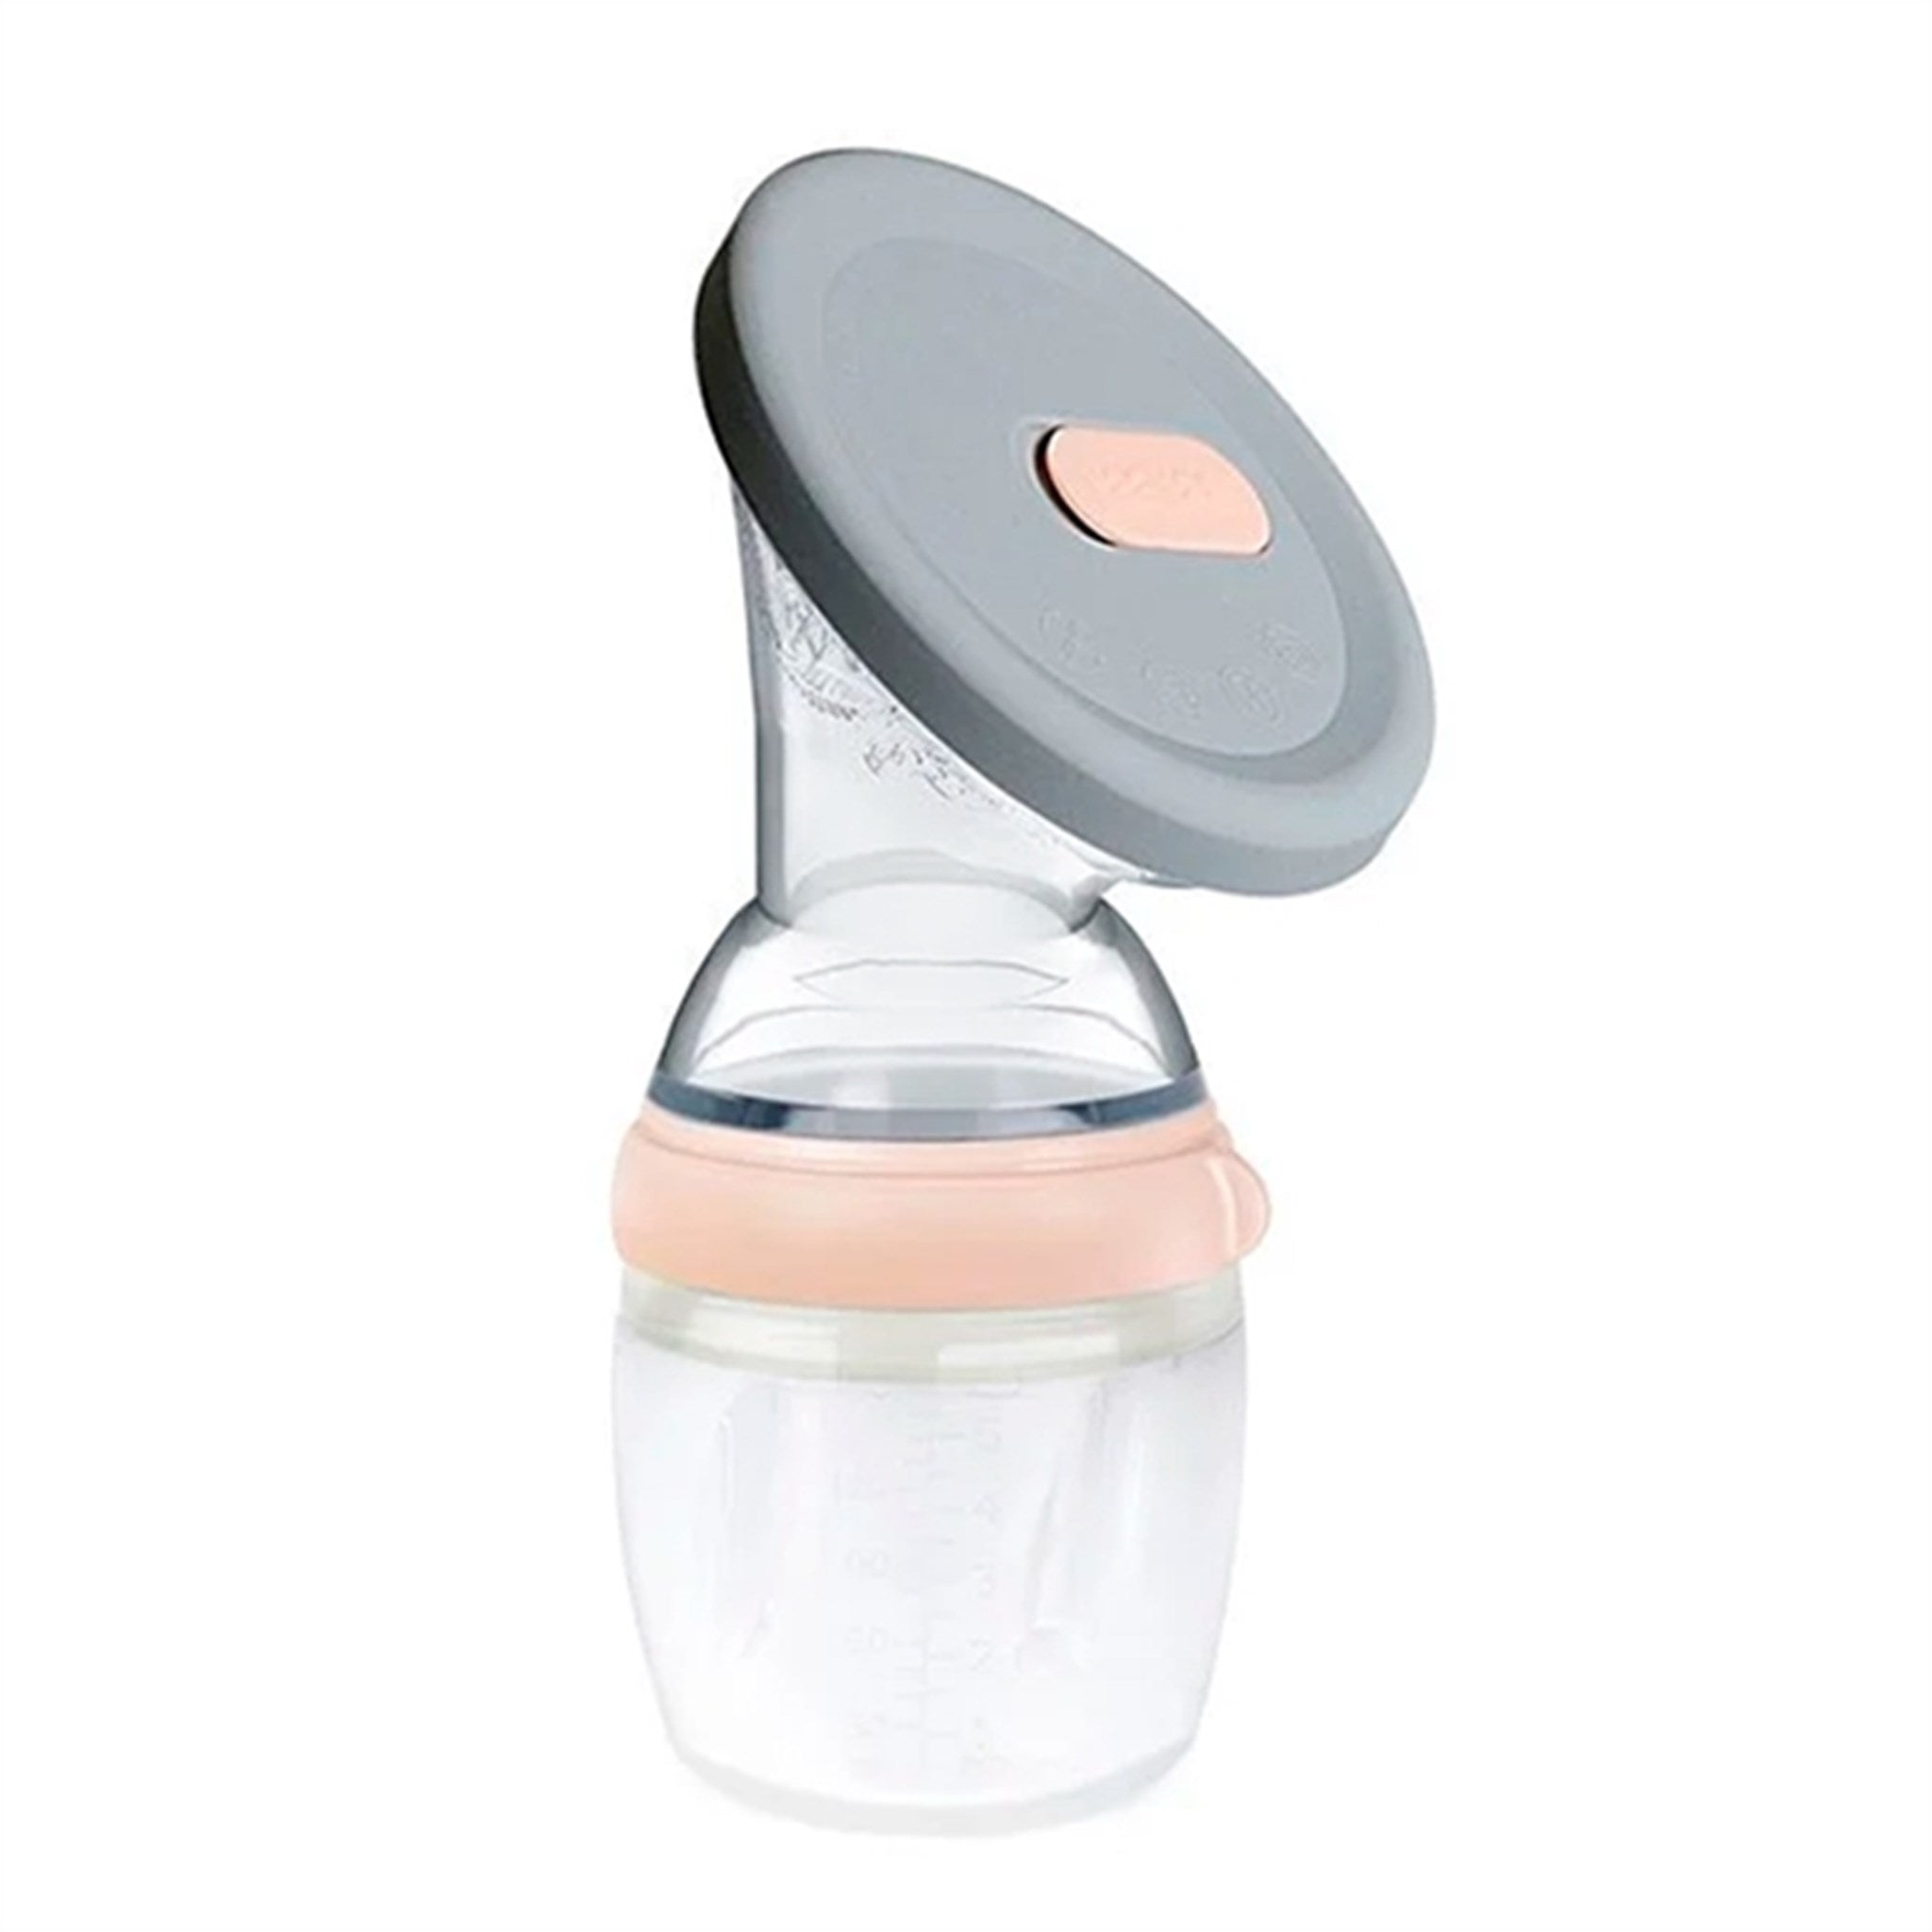 Aio Baby Haakaa Breast Pump 160 Ml Peach